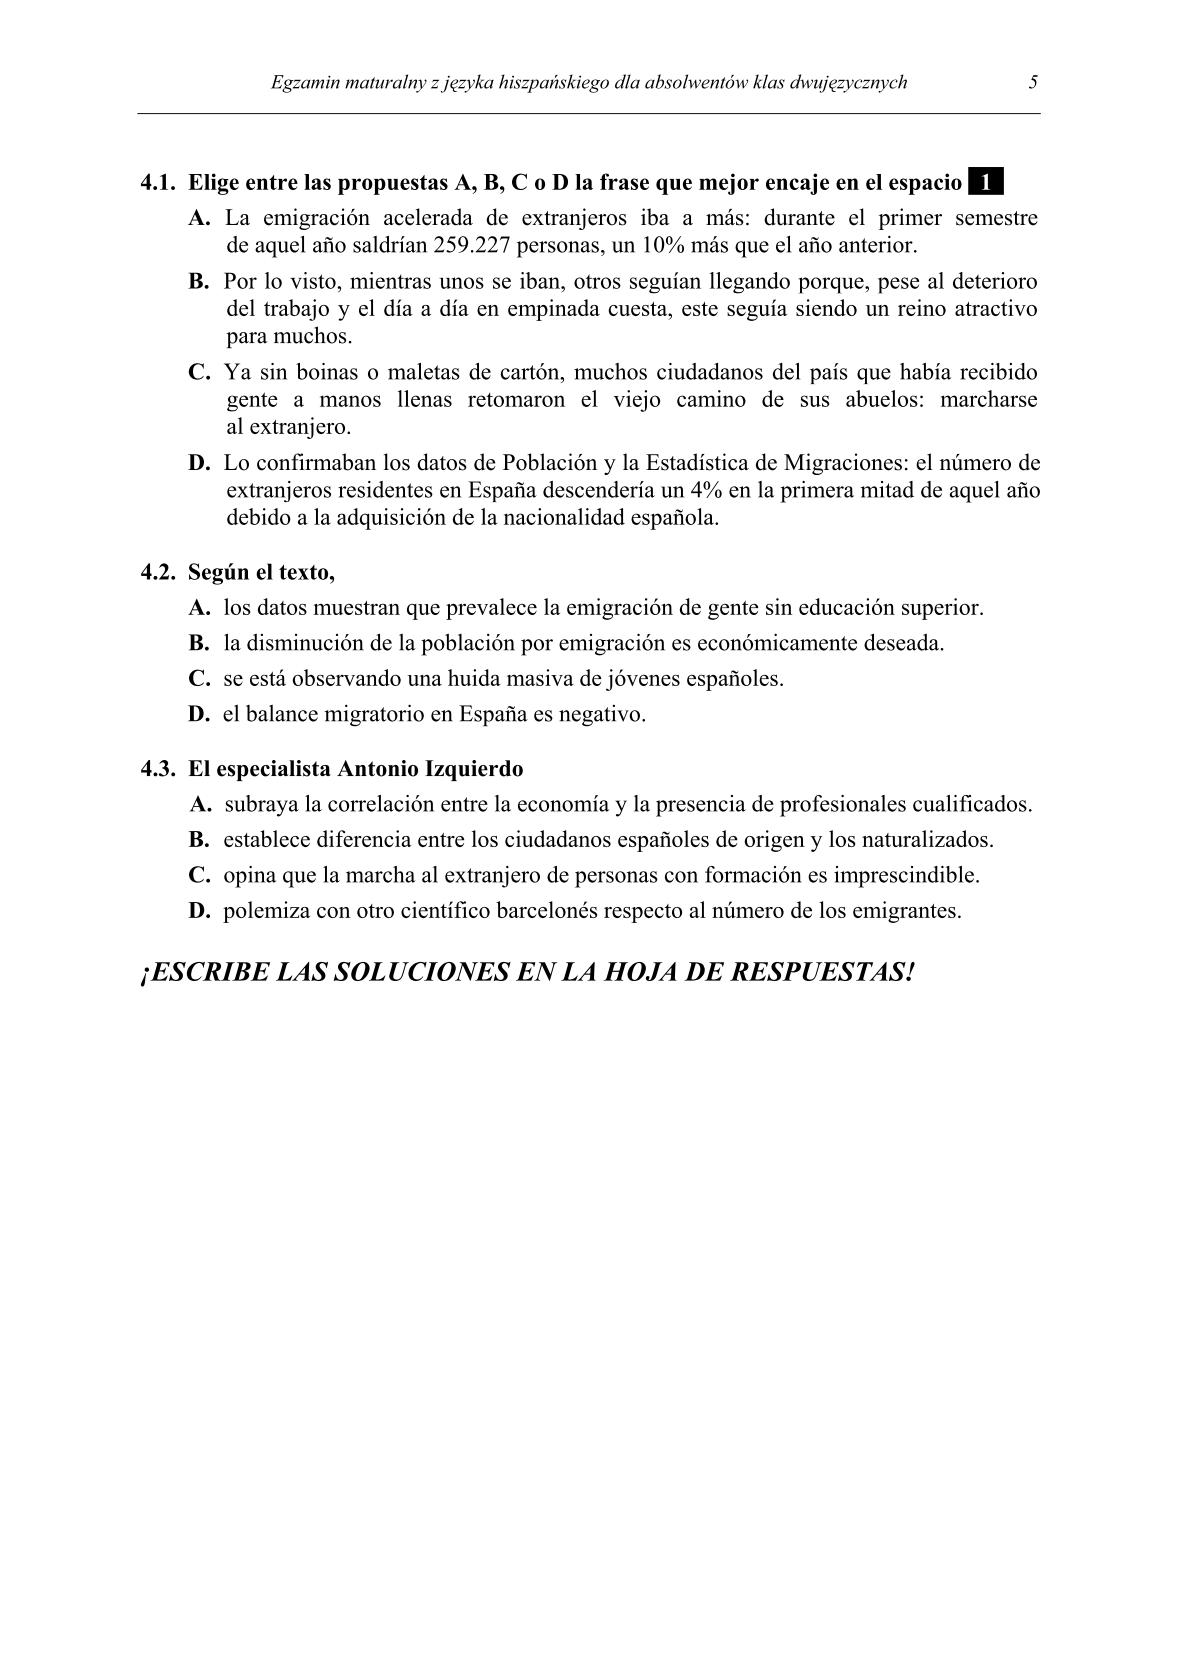 pytania-hiszpanski-dla-absolwentow-klas-dwujezycznych-matura-2014-str.5